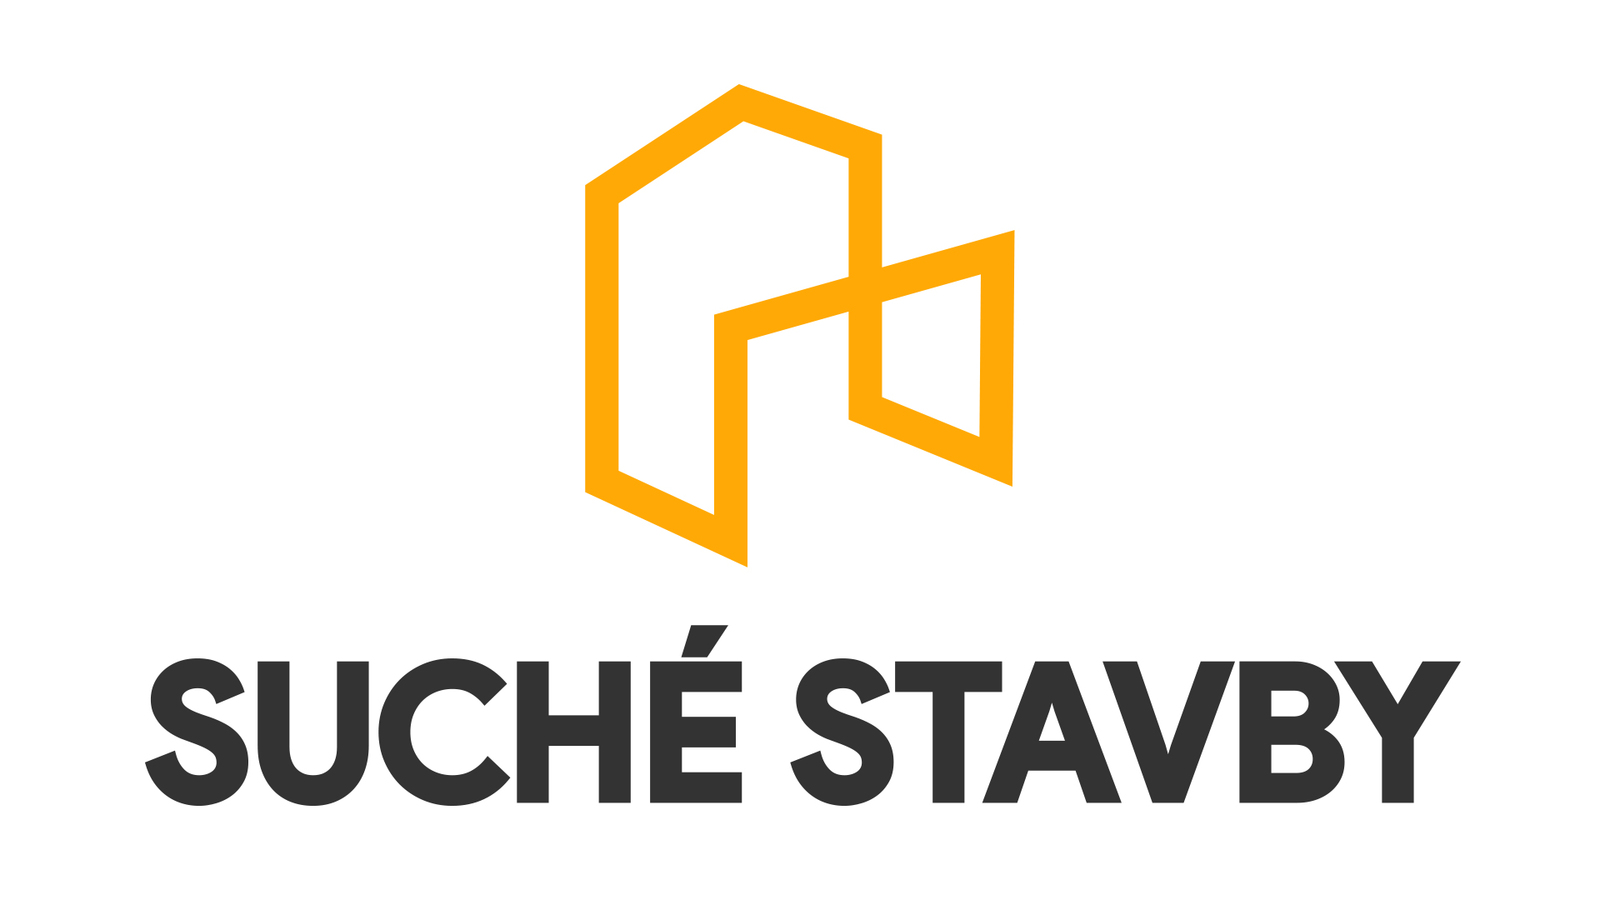 suche_stavby_logo1_vertical.jpg